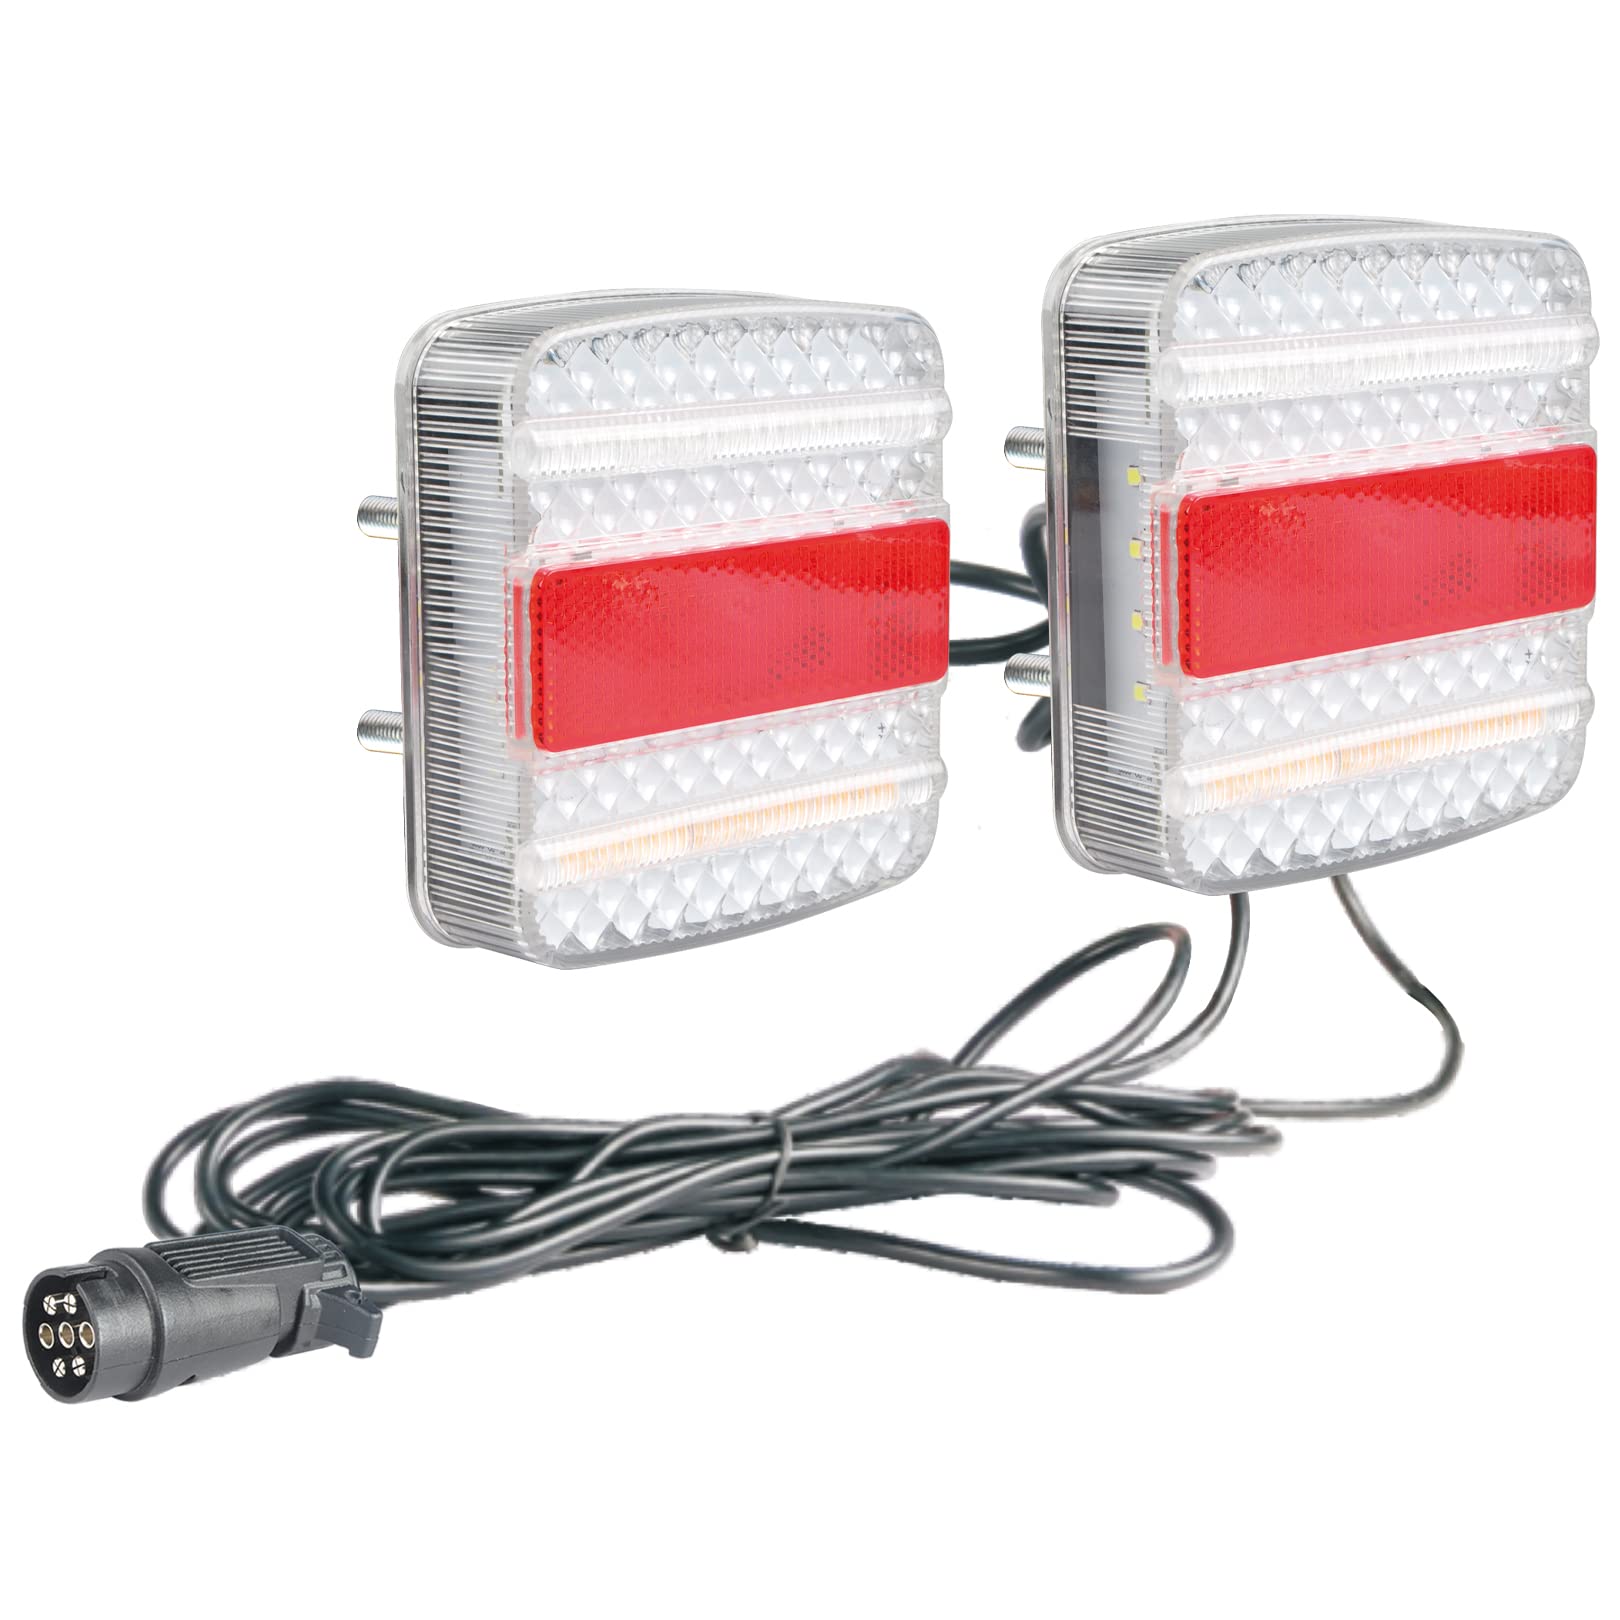 AdLuminis Rückleuchten-Set LED verkabelt für Anhänger, 12V/24V, für den Straßenverkehr zugelassen, zum Anschrauben, mit Canbus (323110) von AdLuminis